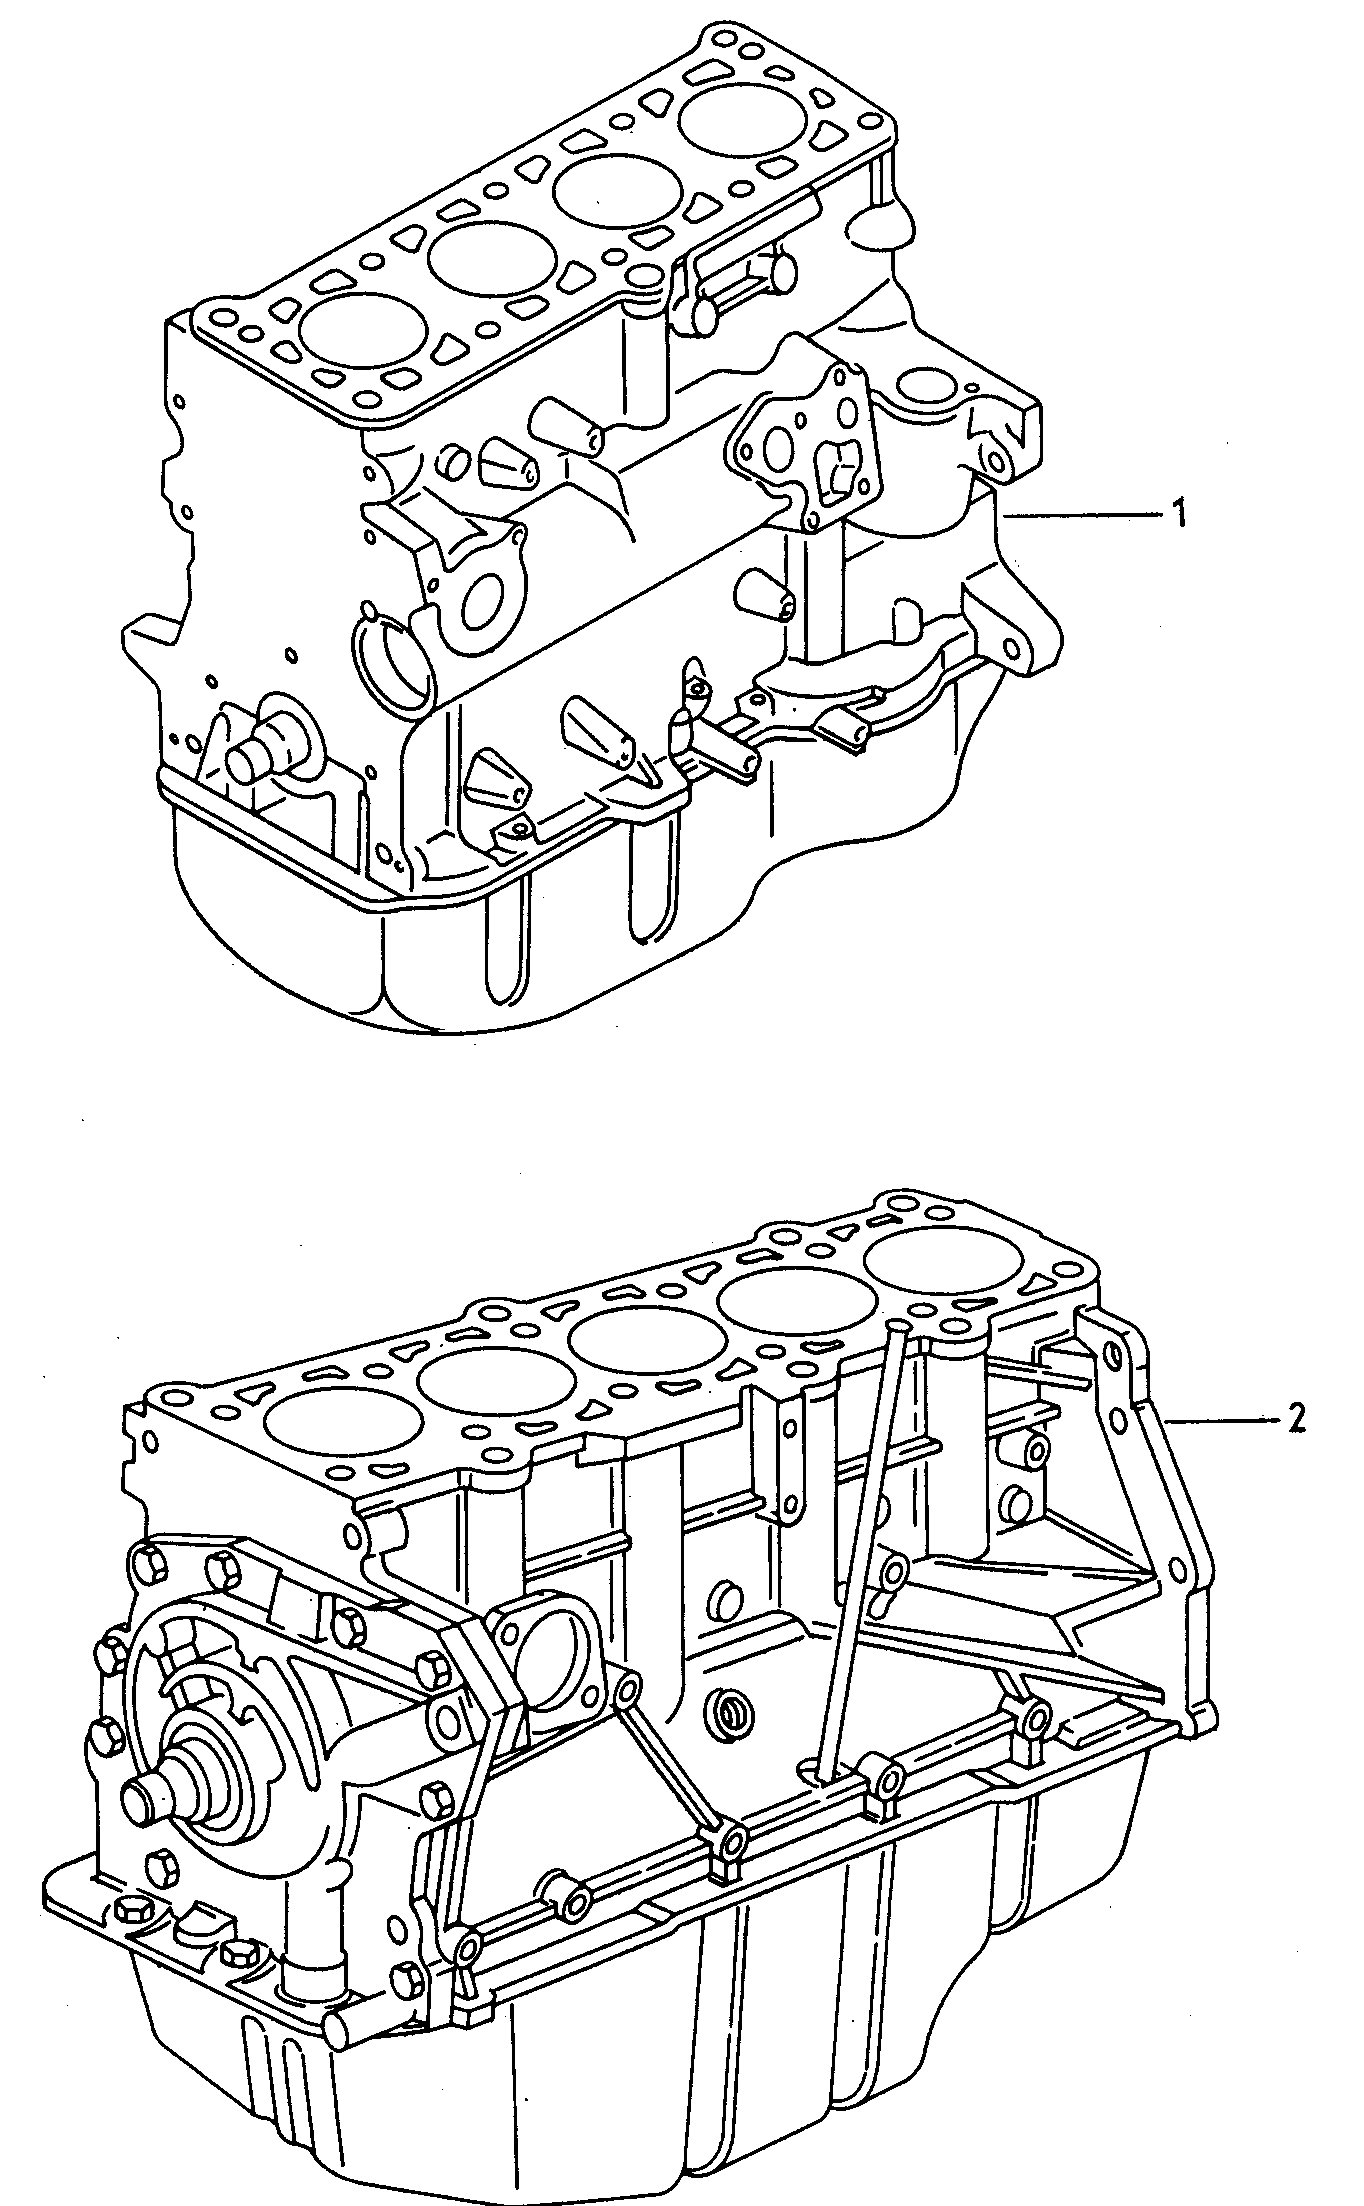 motore parz.con albero motore,
pistoni, pompa e c... - Audi 80/90/Avant(A80)  